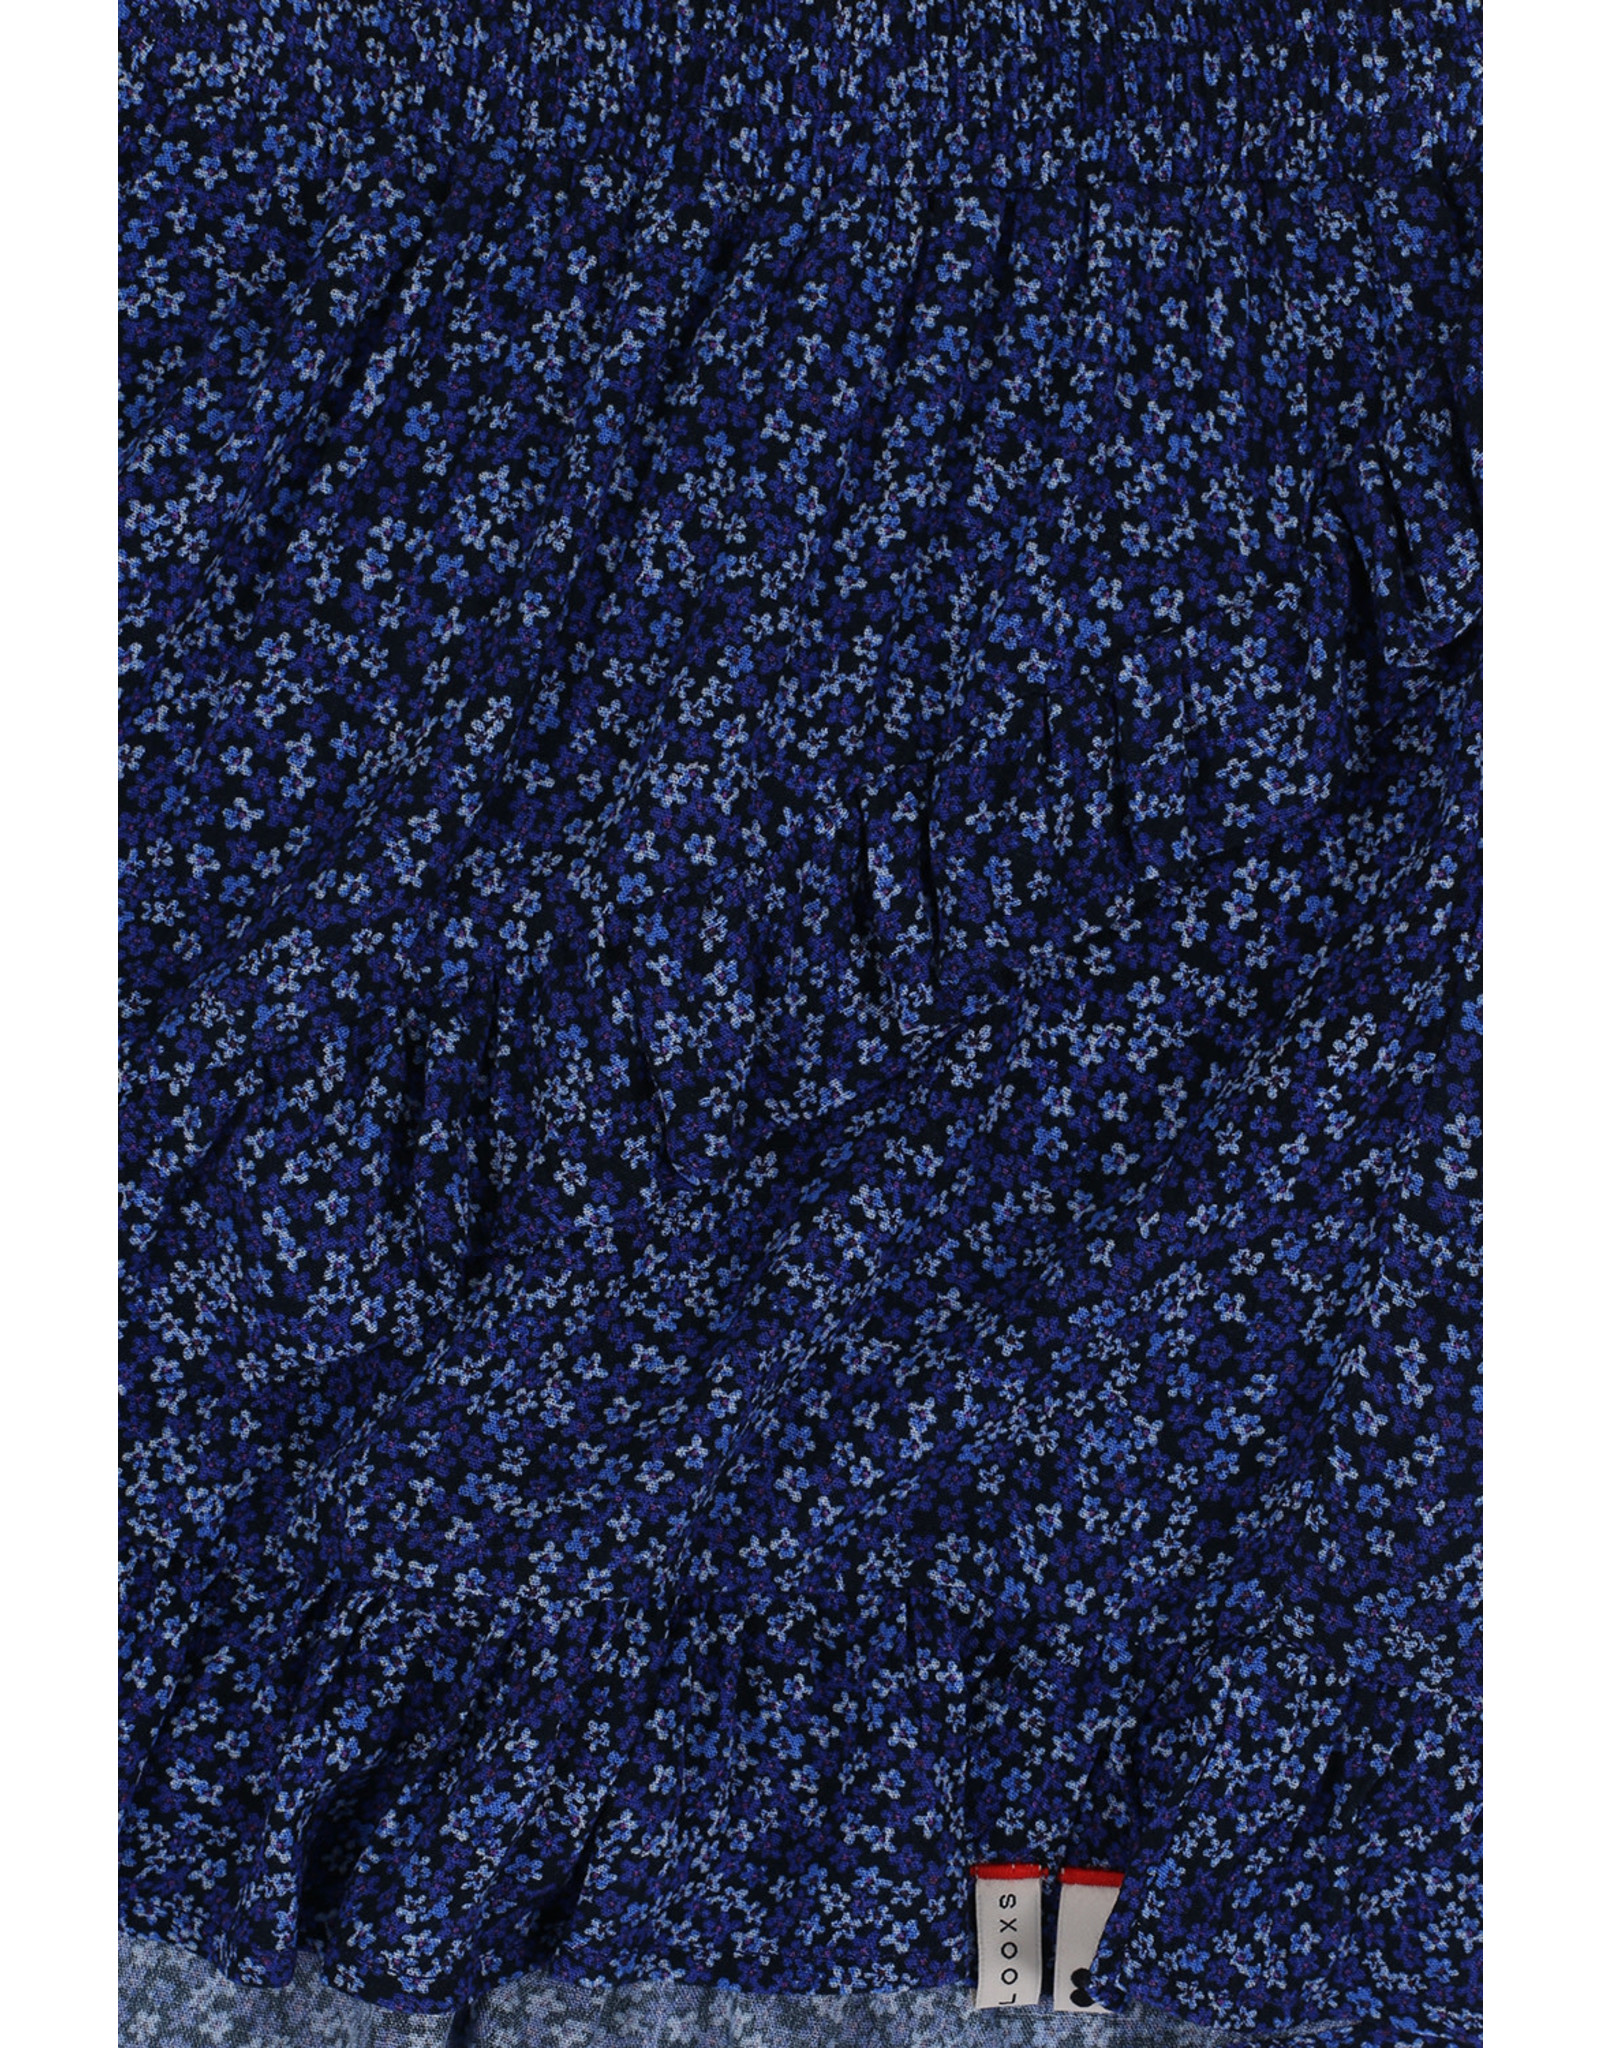 Looxs 10sixteen Vliolet flower skirt Voilet blue